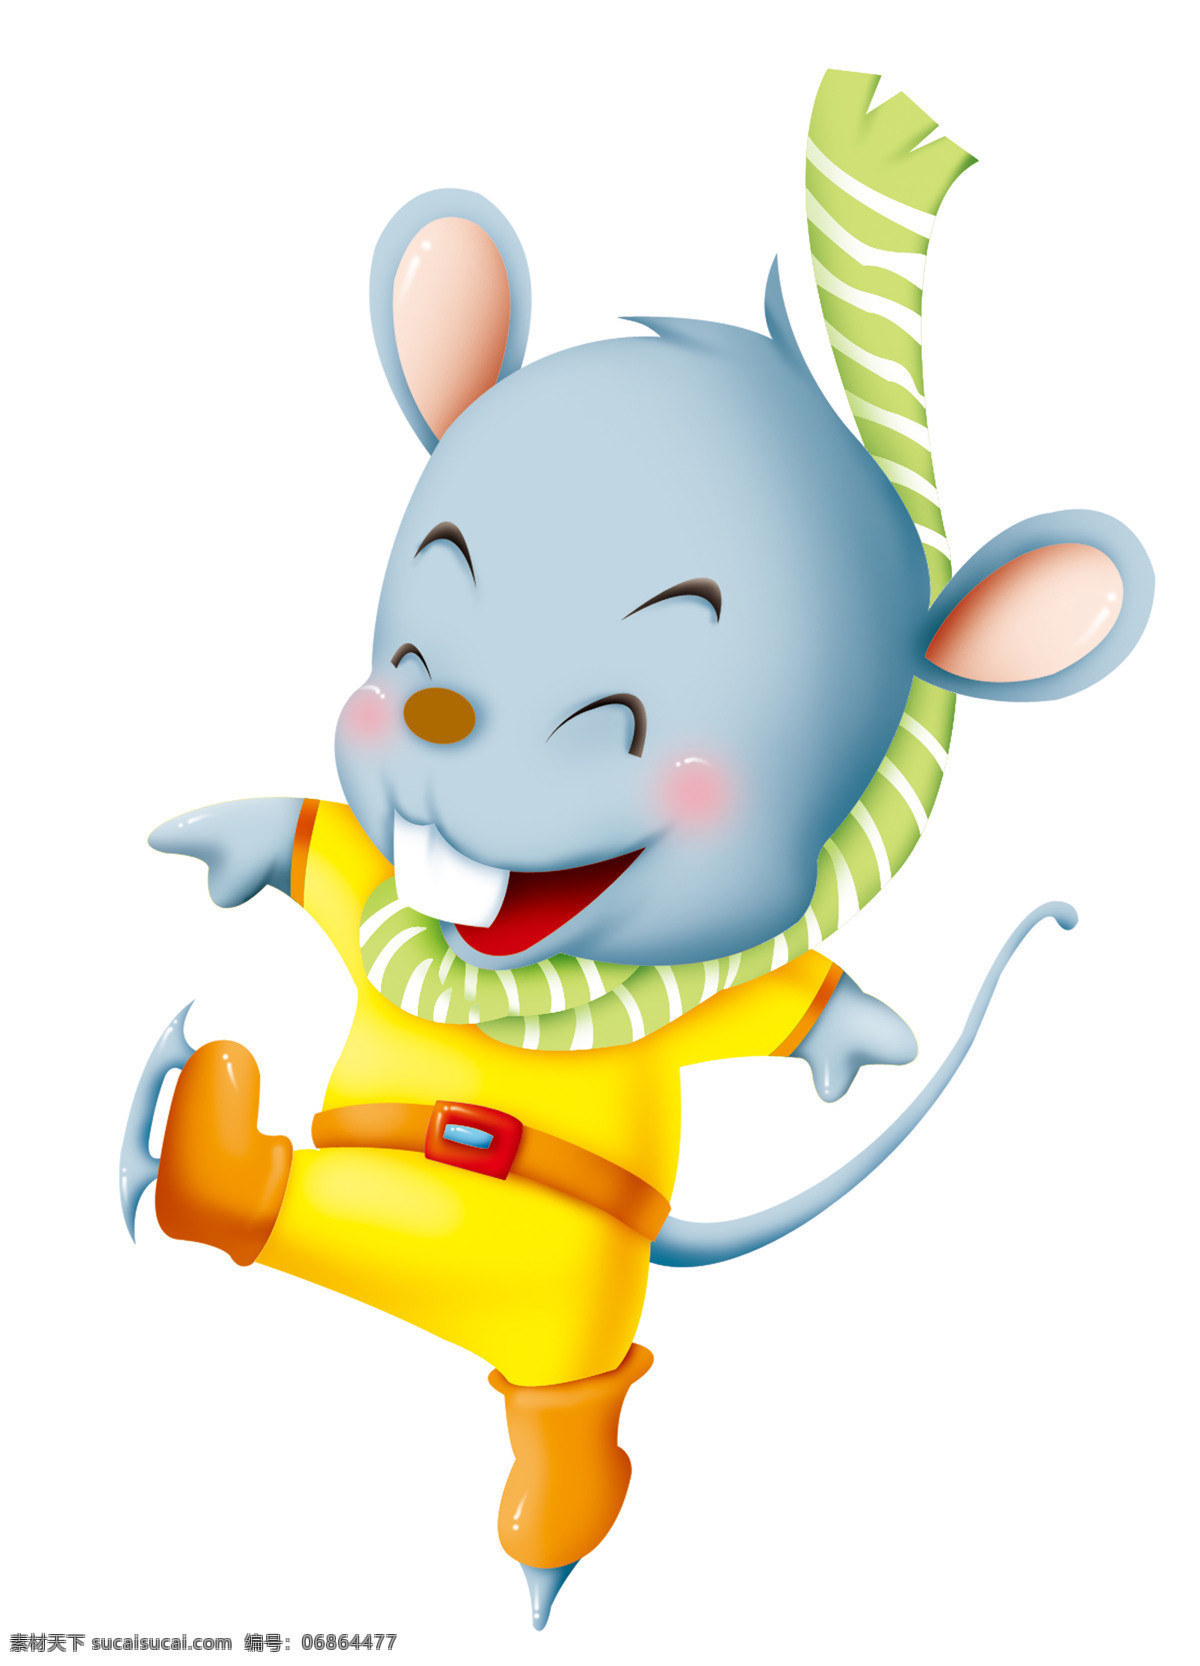 老鼠 动漫动画 过年 卡通 可爱 漫画 生肖鼠 鼠 老鼠设计素材 老鼠模板下载 鼠年 节日素材 2015 新年 元旦 春节 元宵